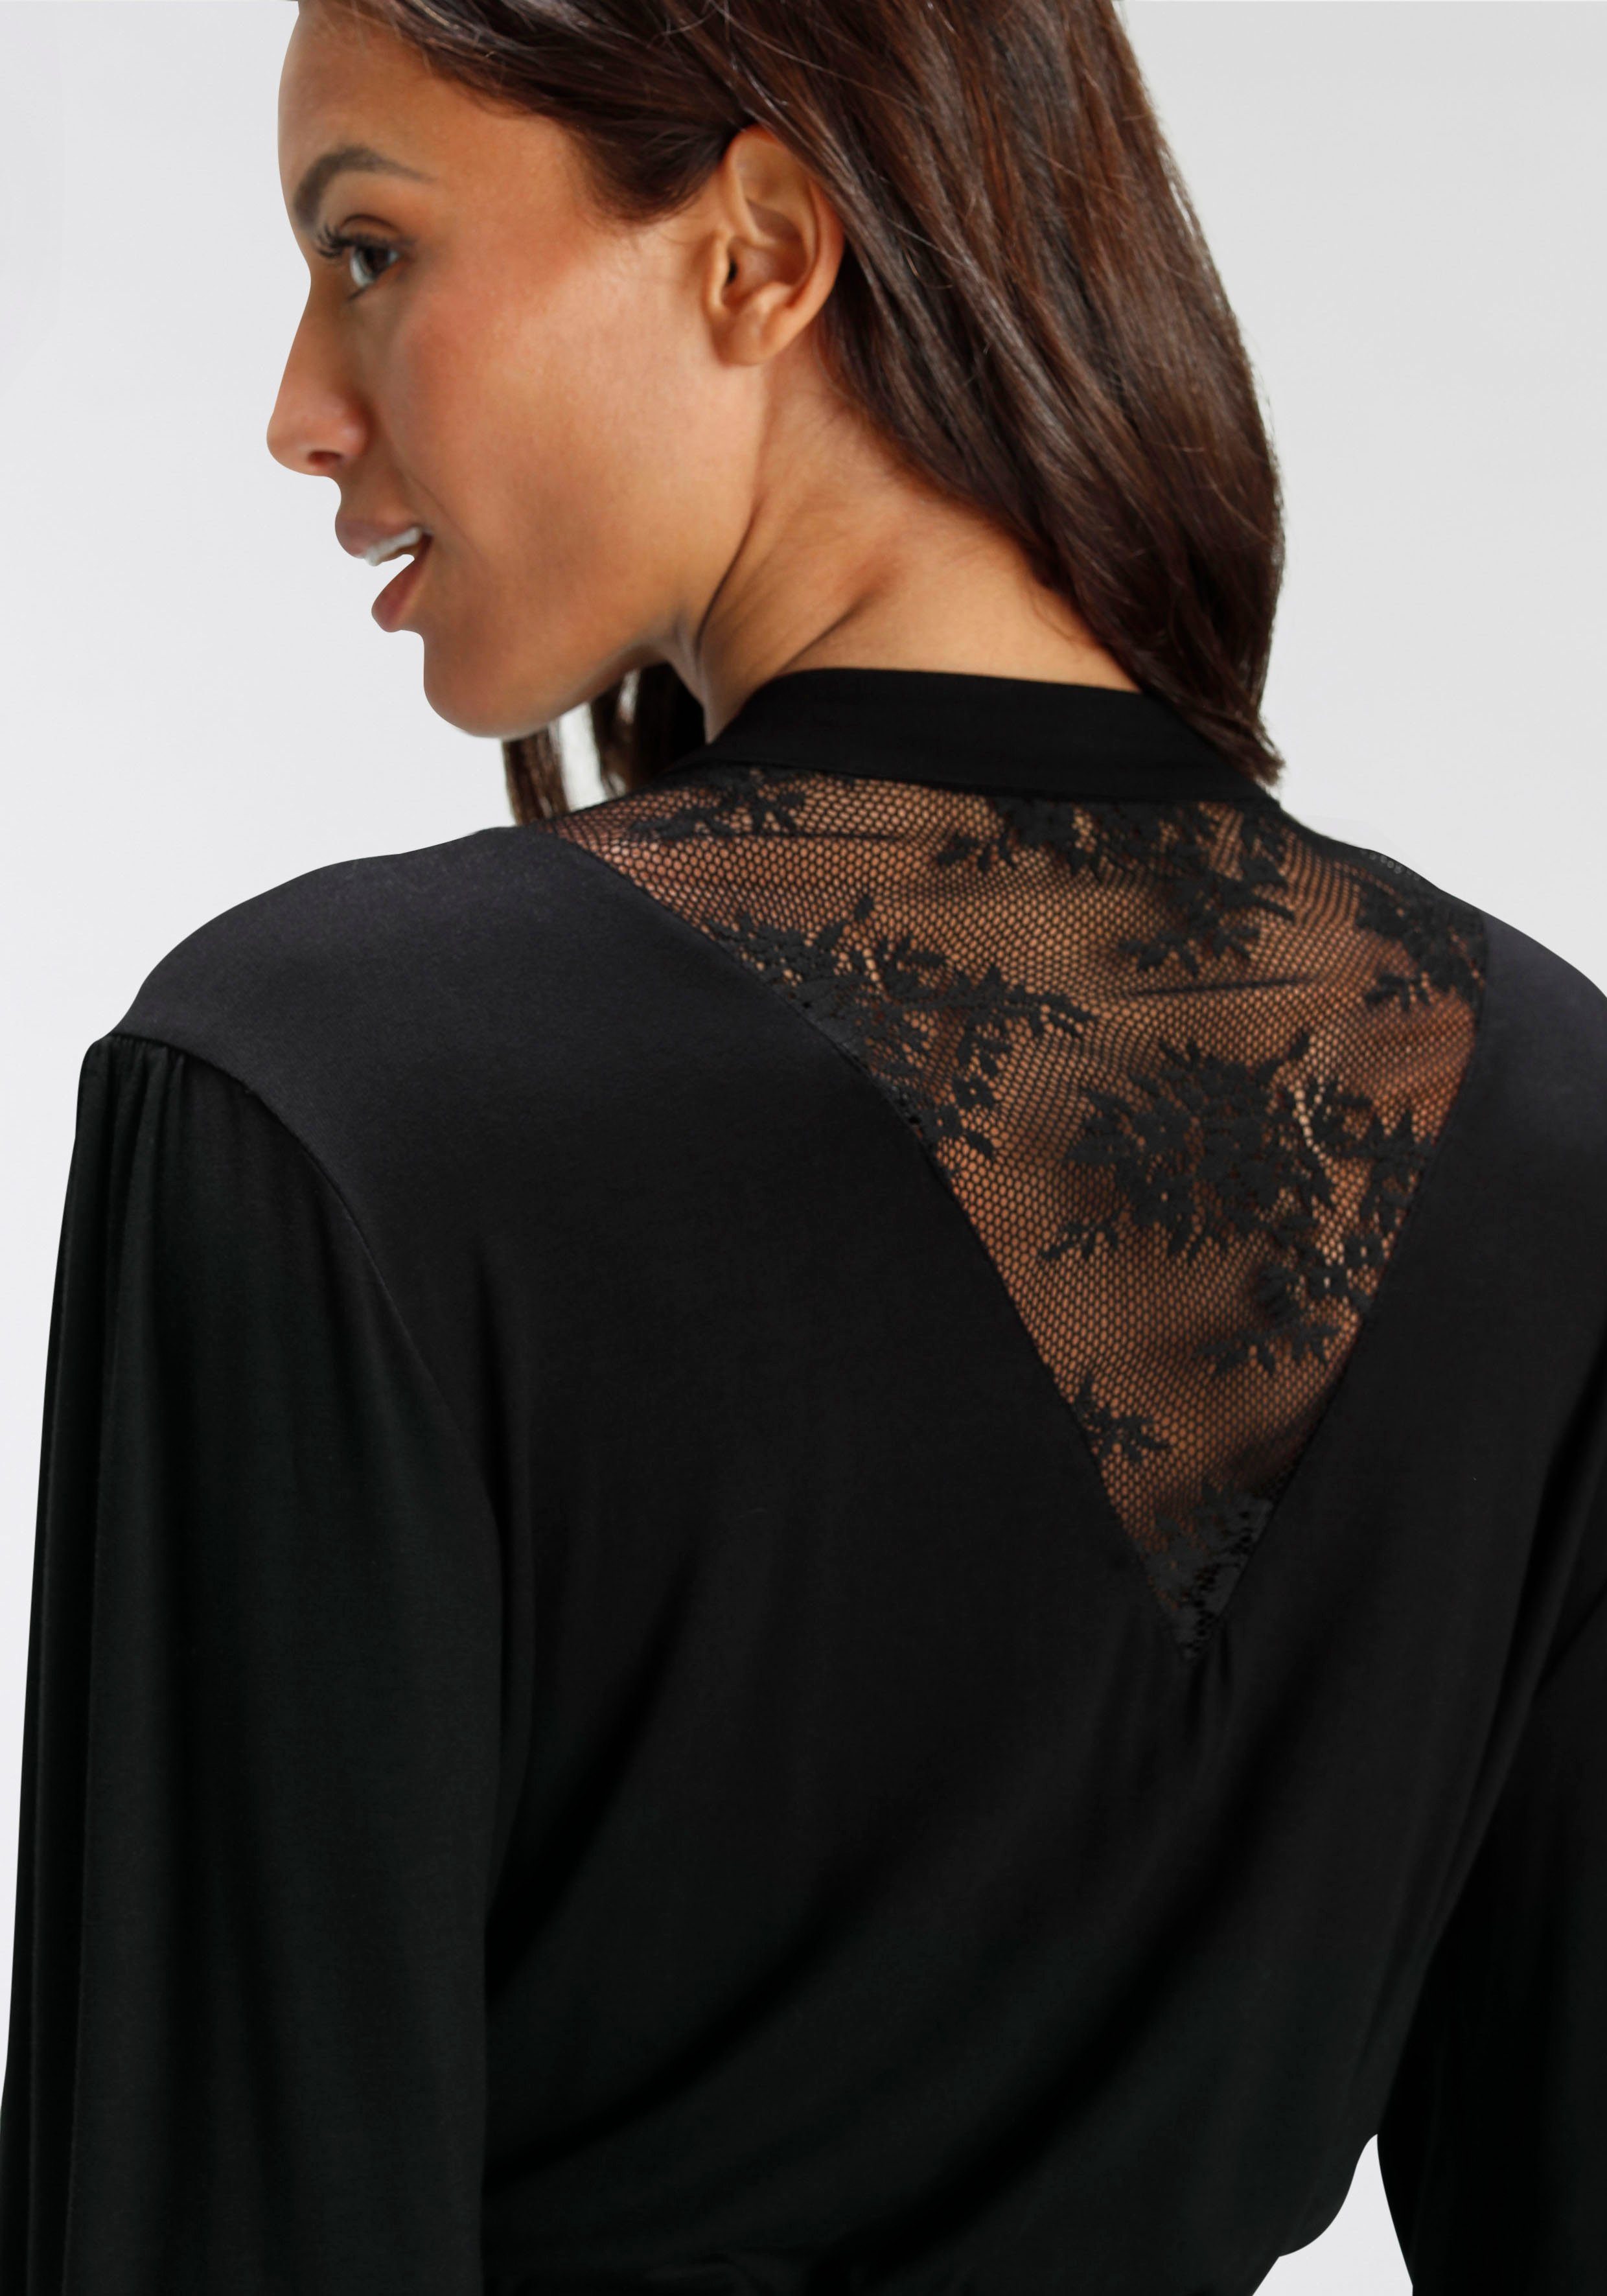 Viskose, Kimono, Spitzendetails mit schwarz schönen Bruno Banani Kurzform,